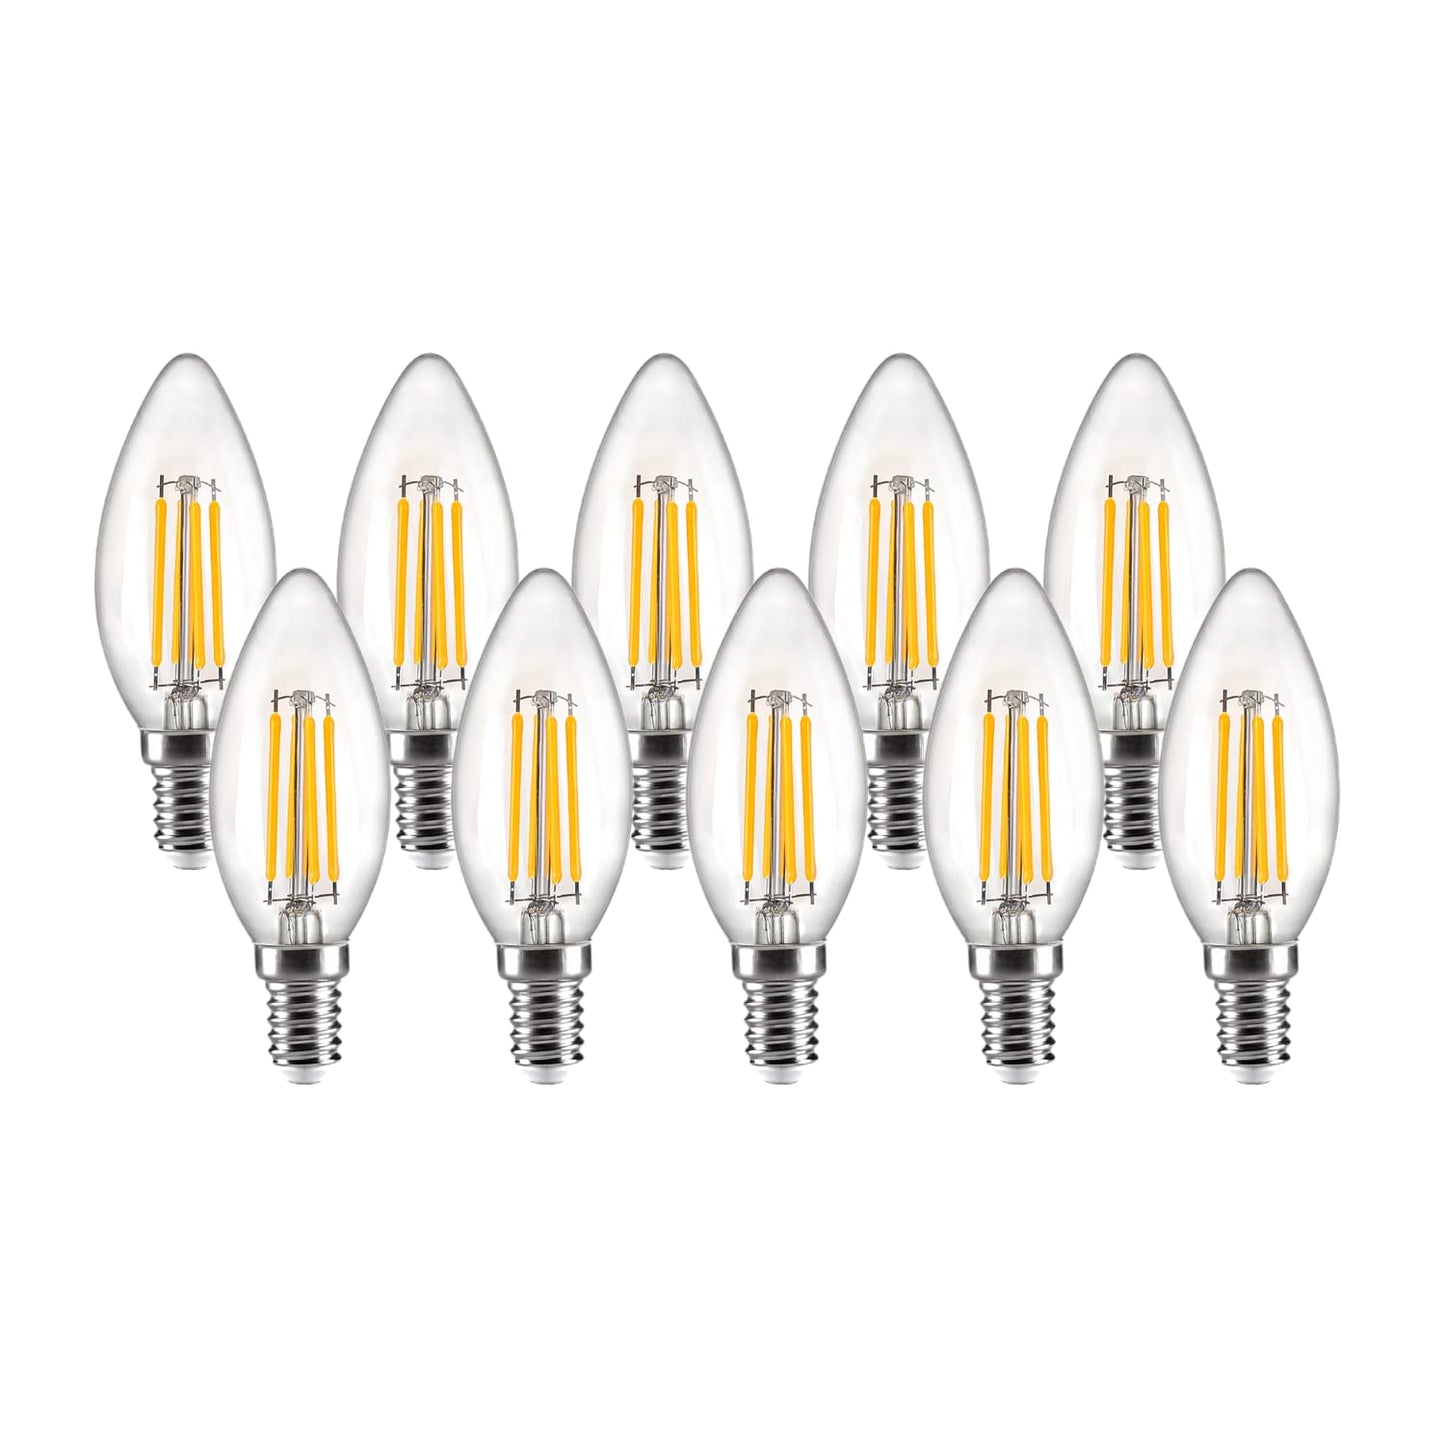 NUOVA GERMANY Filamento LED E14, 4W Equivalenti a 40W, 400Lm, 3000K Luce Calda, Oliva C35 Stile Vintage, Non Dimmerabile, Confezione da 10 Pezzi